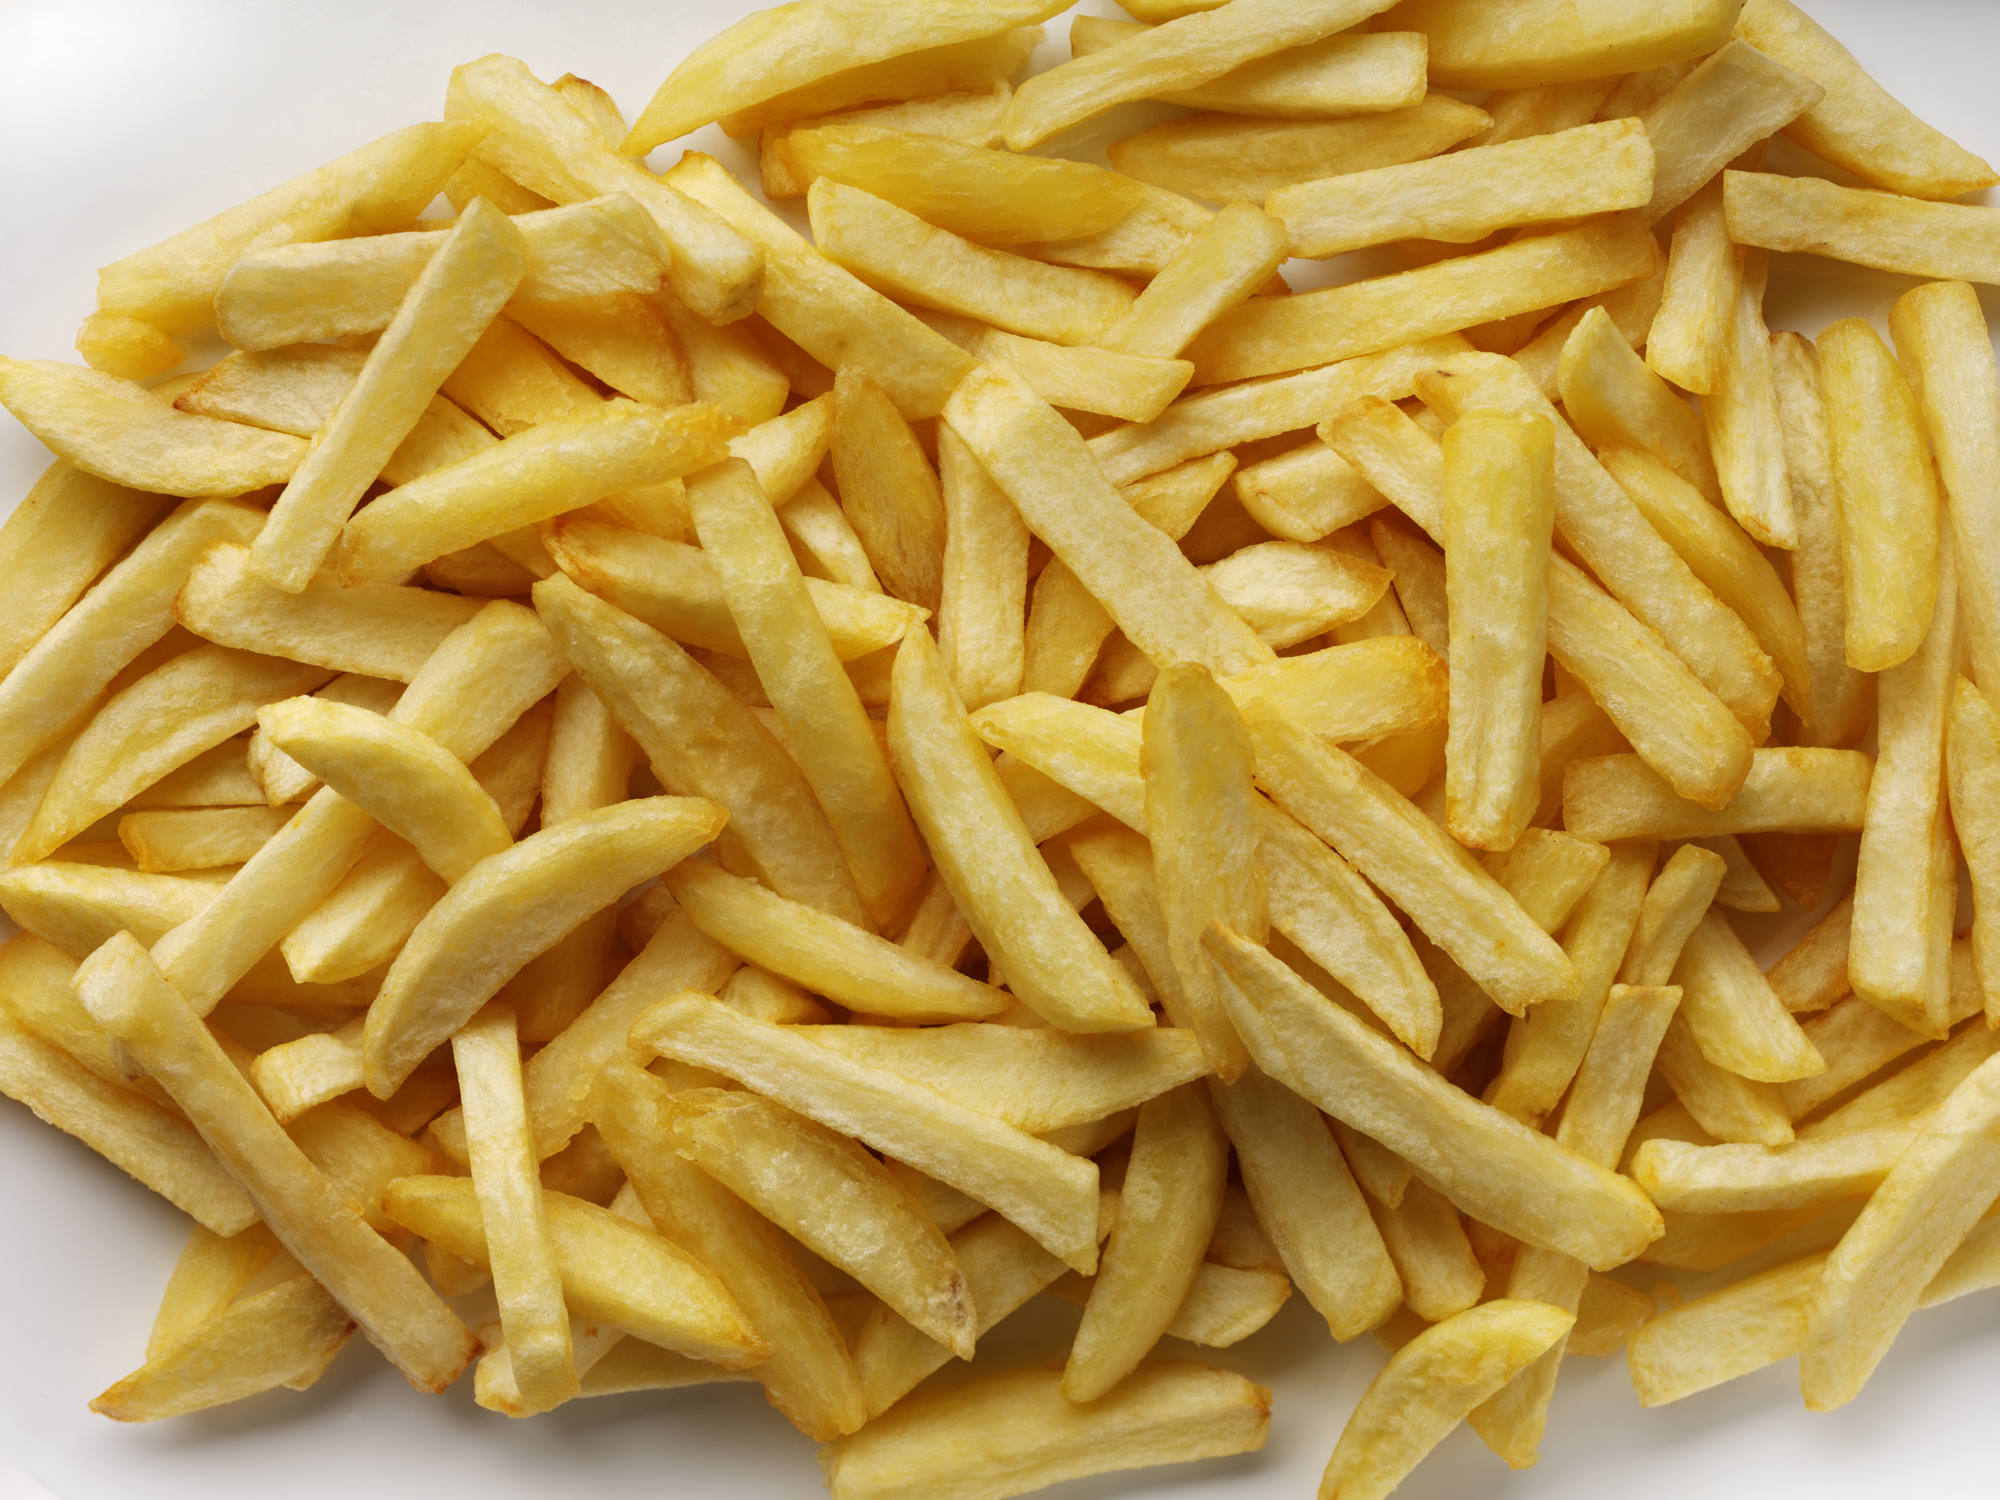 Según estudio el consumo elevado de alimentos fritos como papas a la francesa afecta la ansiedad y depresión debido a su alteración en el metabolismo.